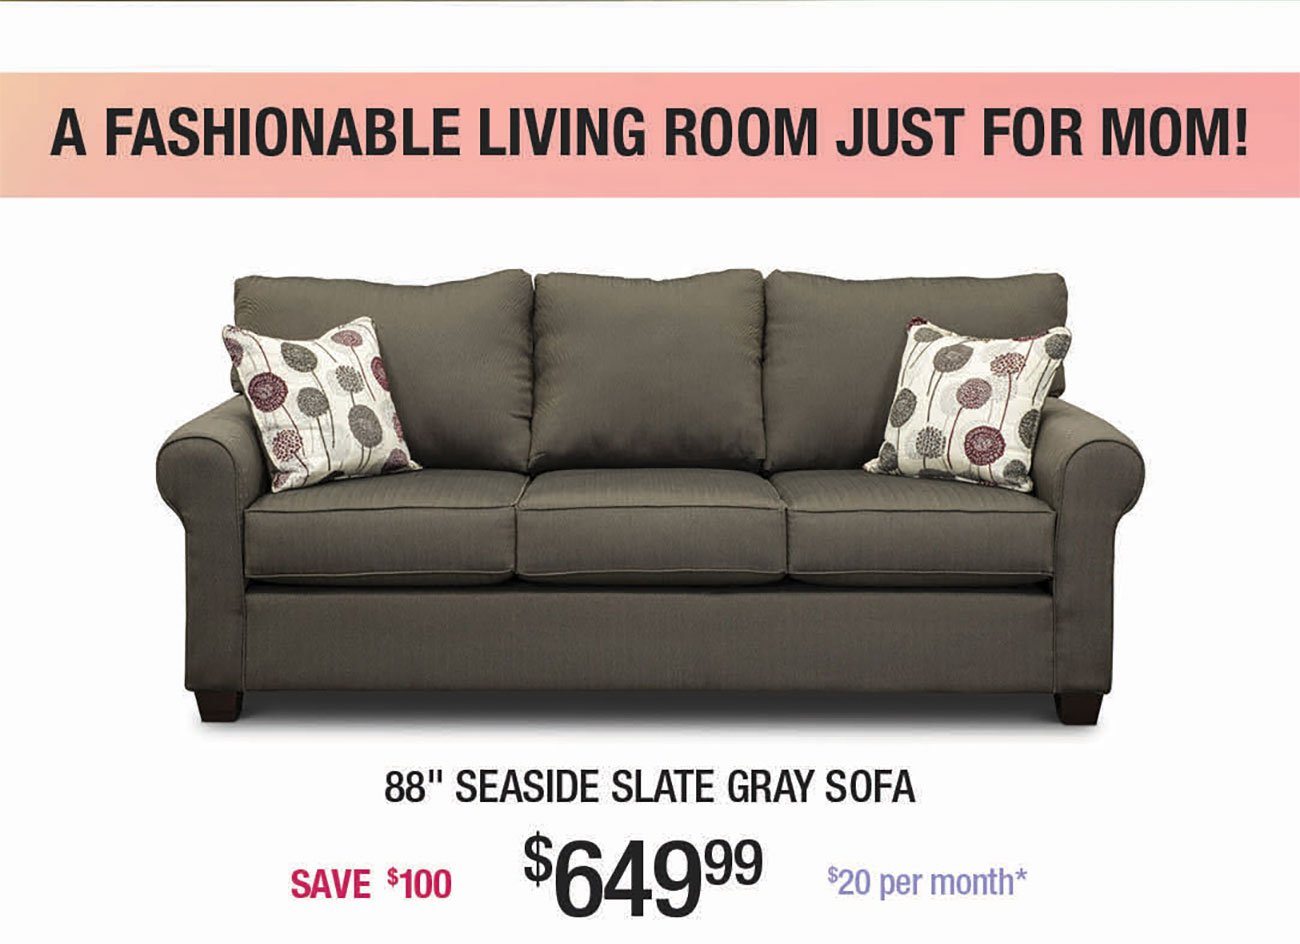 Seaside-Slate-Gray-Sofa